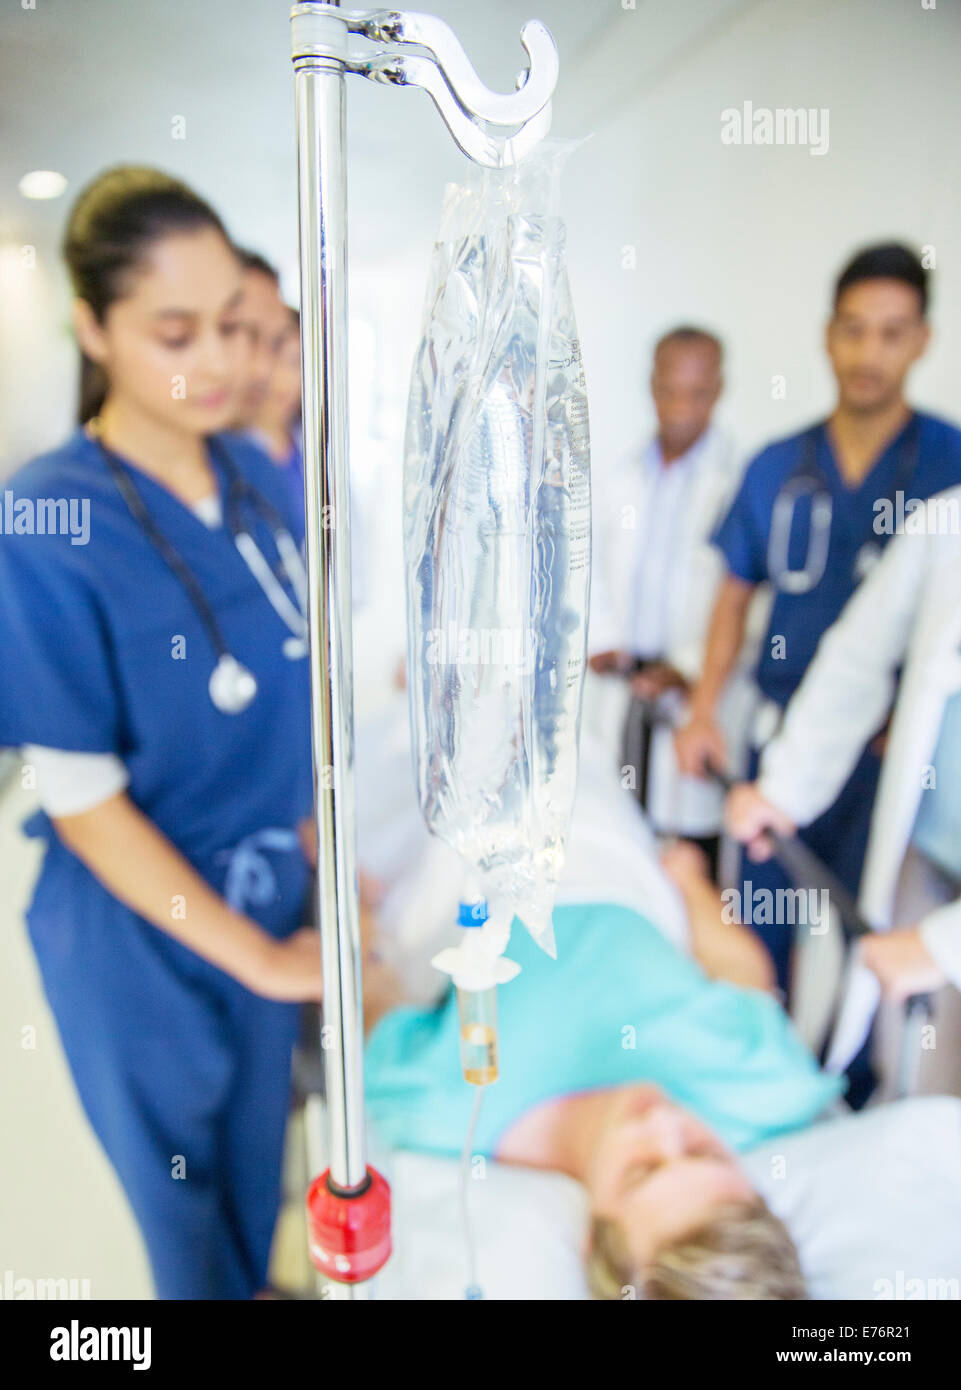 Krankenschwestern und Arzt-Patient im Krankenhaus Flur Machenschaften Stockfoto